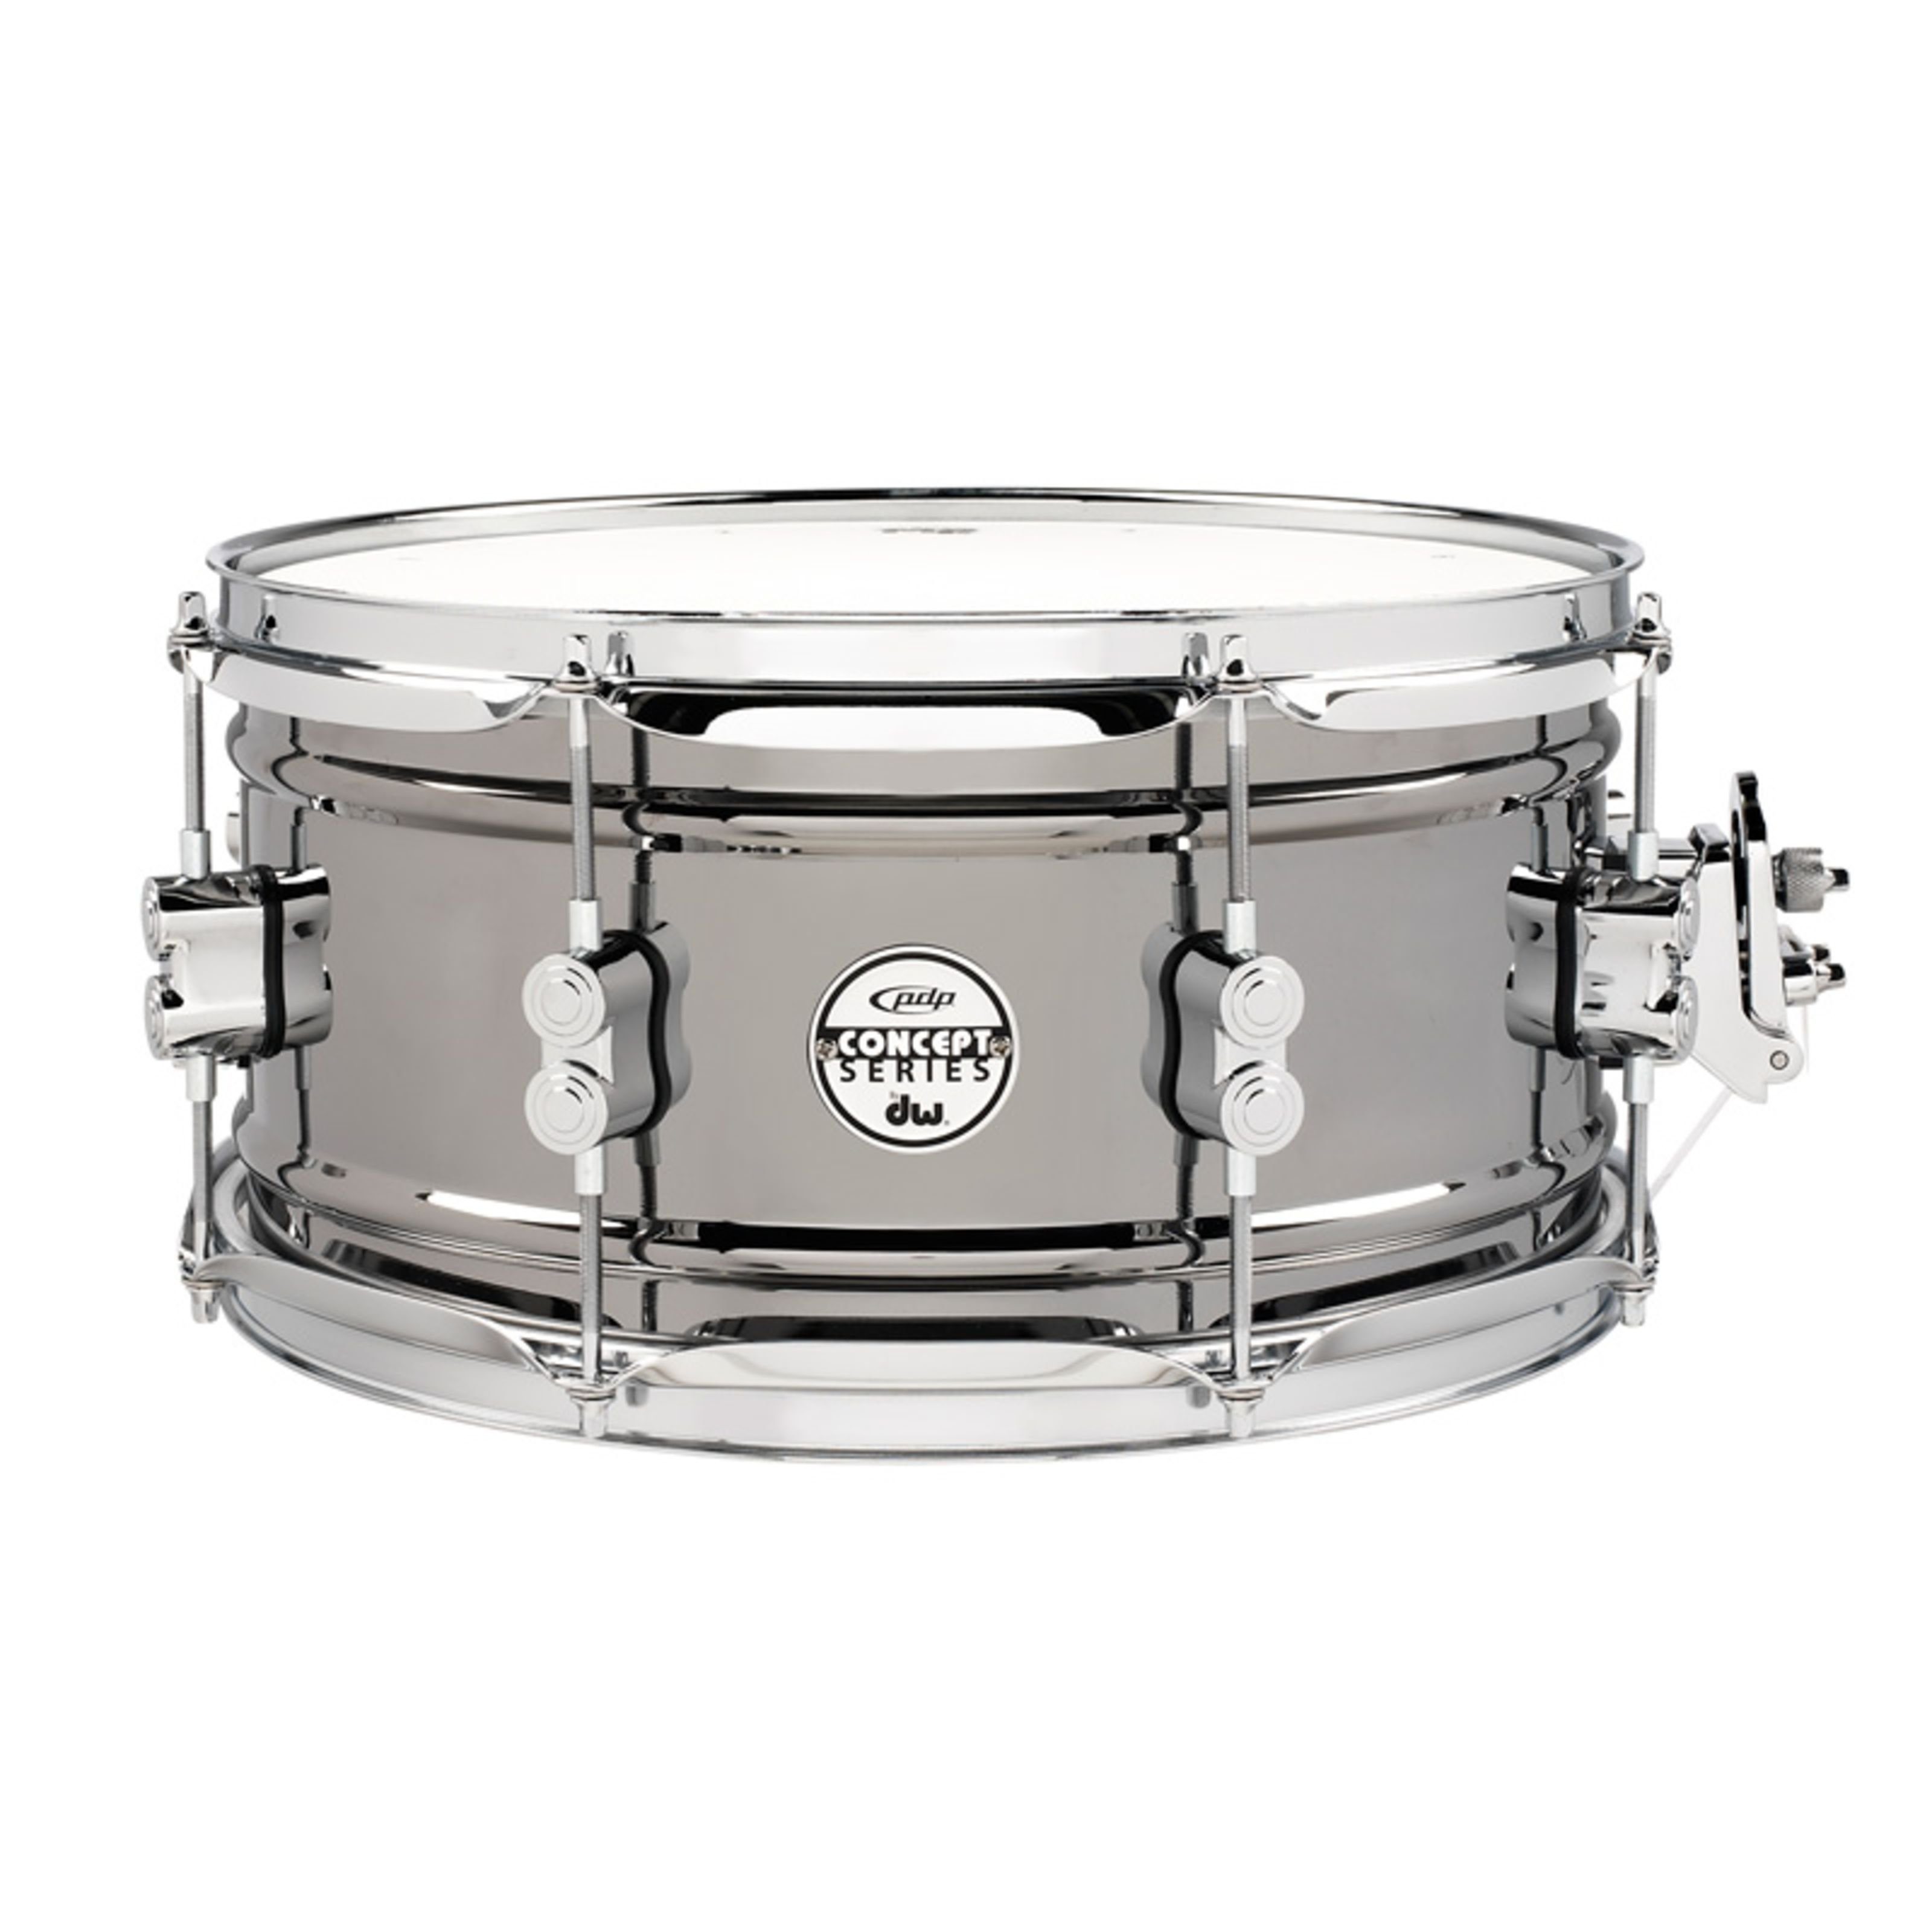 pdp Snare Drum,Black Nickel Steel Snare 13"x6,5", Black Nickel Steel Snare 13"x6,5" - Snare Drum